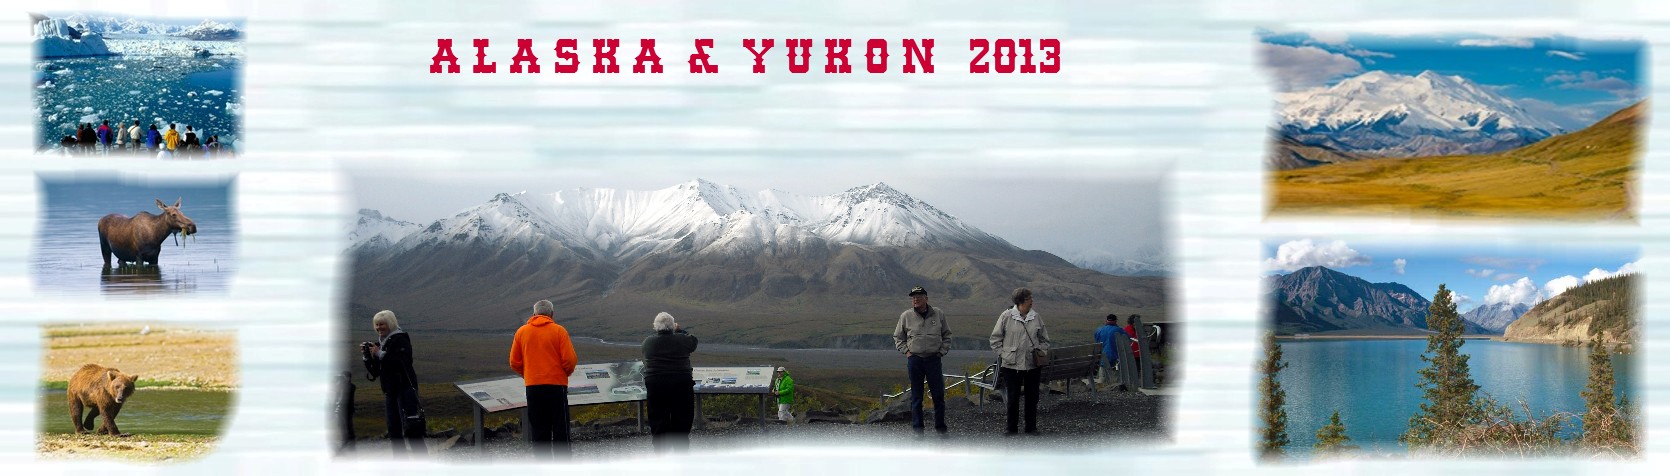 Alaska und Yukon Banner2